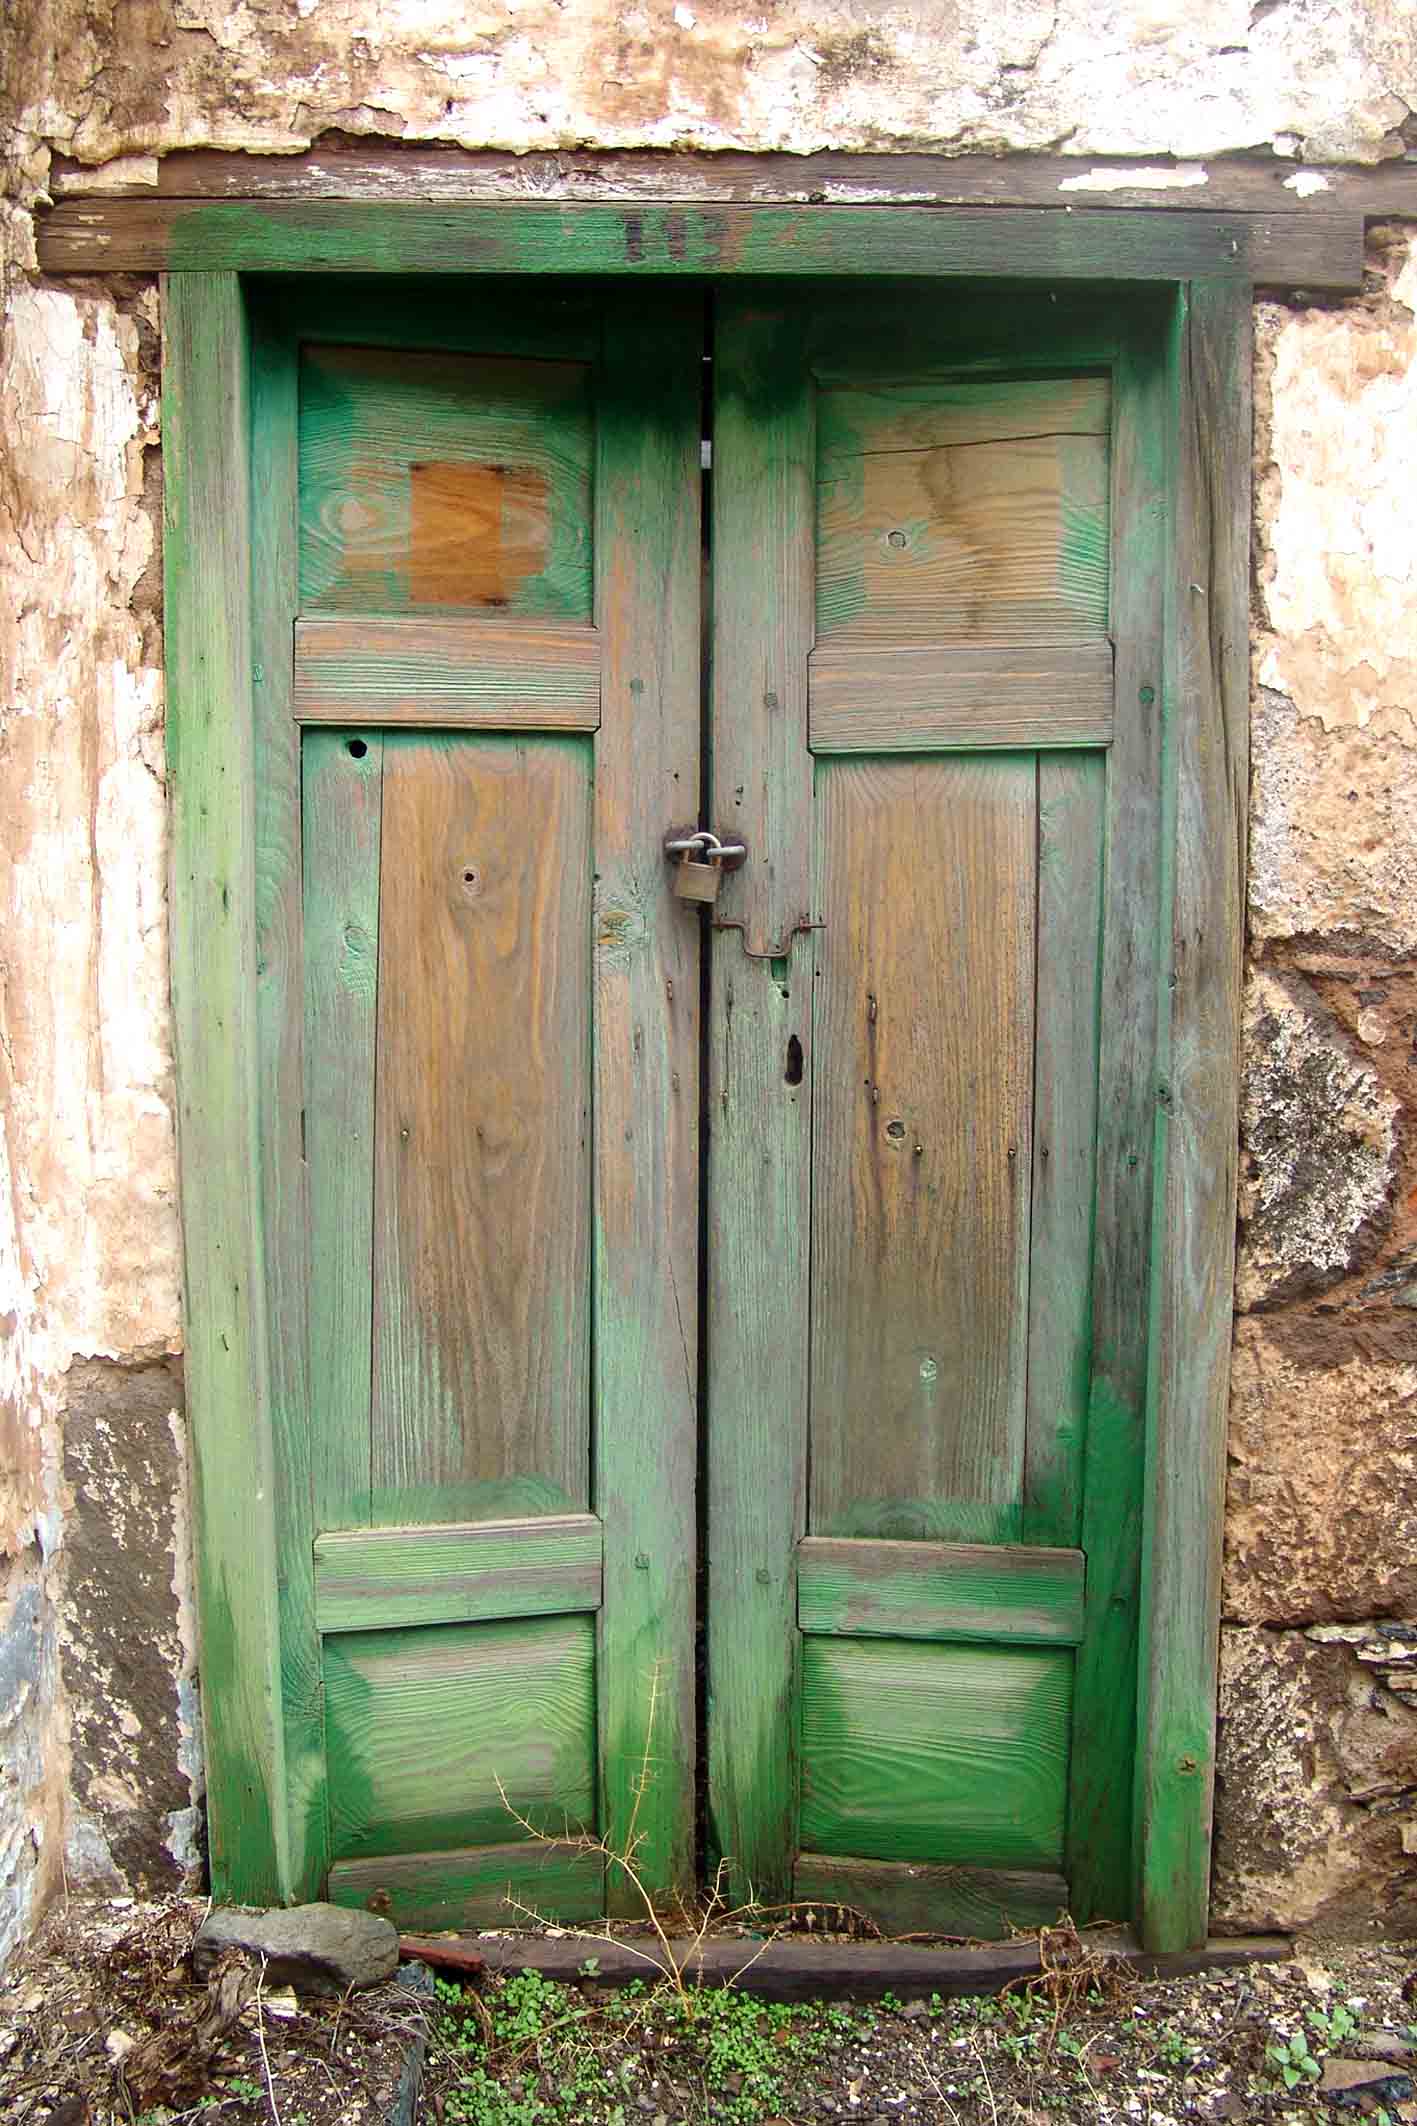 Green door with lock